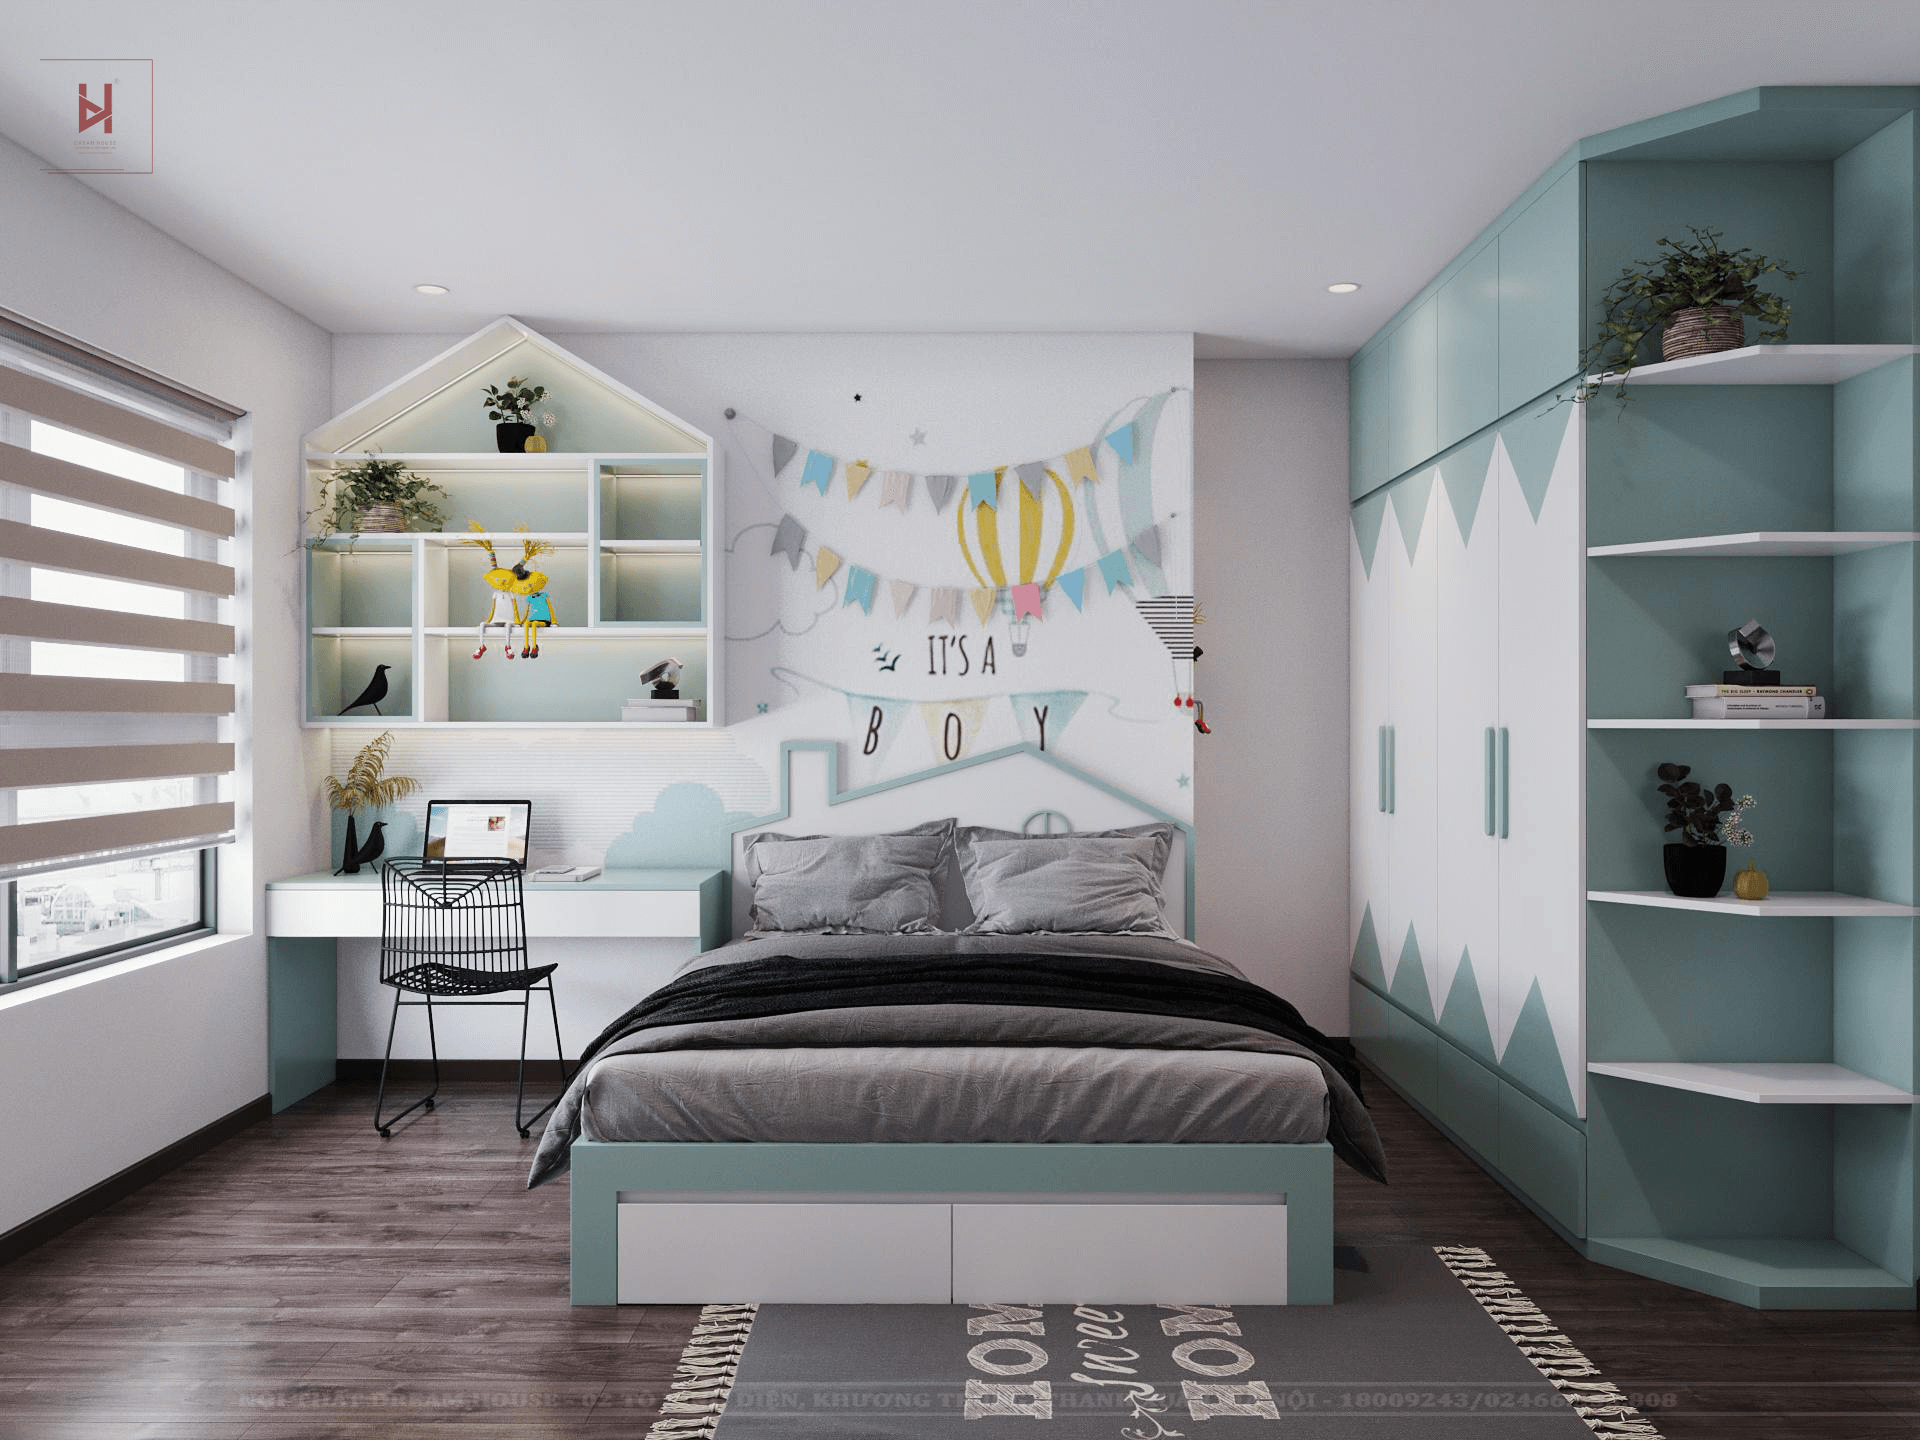 Nội thất phòng ngủ đóng vai trò quan trọng trong việc tạo nên không gian sống đáng sống. Sự kết hợp hài hòa giữa các sản phẩm nội thất và màu sắc tạo nên một phong cách riêng cho phòng ngủ của bạn. Hãy để những hình ảnh nội thất phòng ngủ chúng tôi cung cấp giúp cho bạn có được những ý tưởng thiết kế đầy sáng tạo và tối ưu cho không gian sống của bạn.